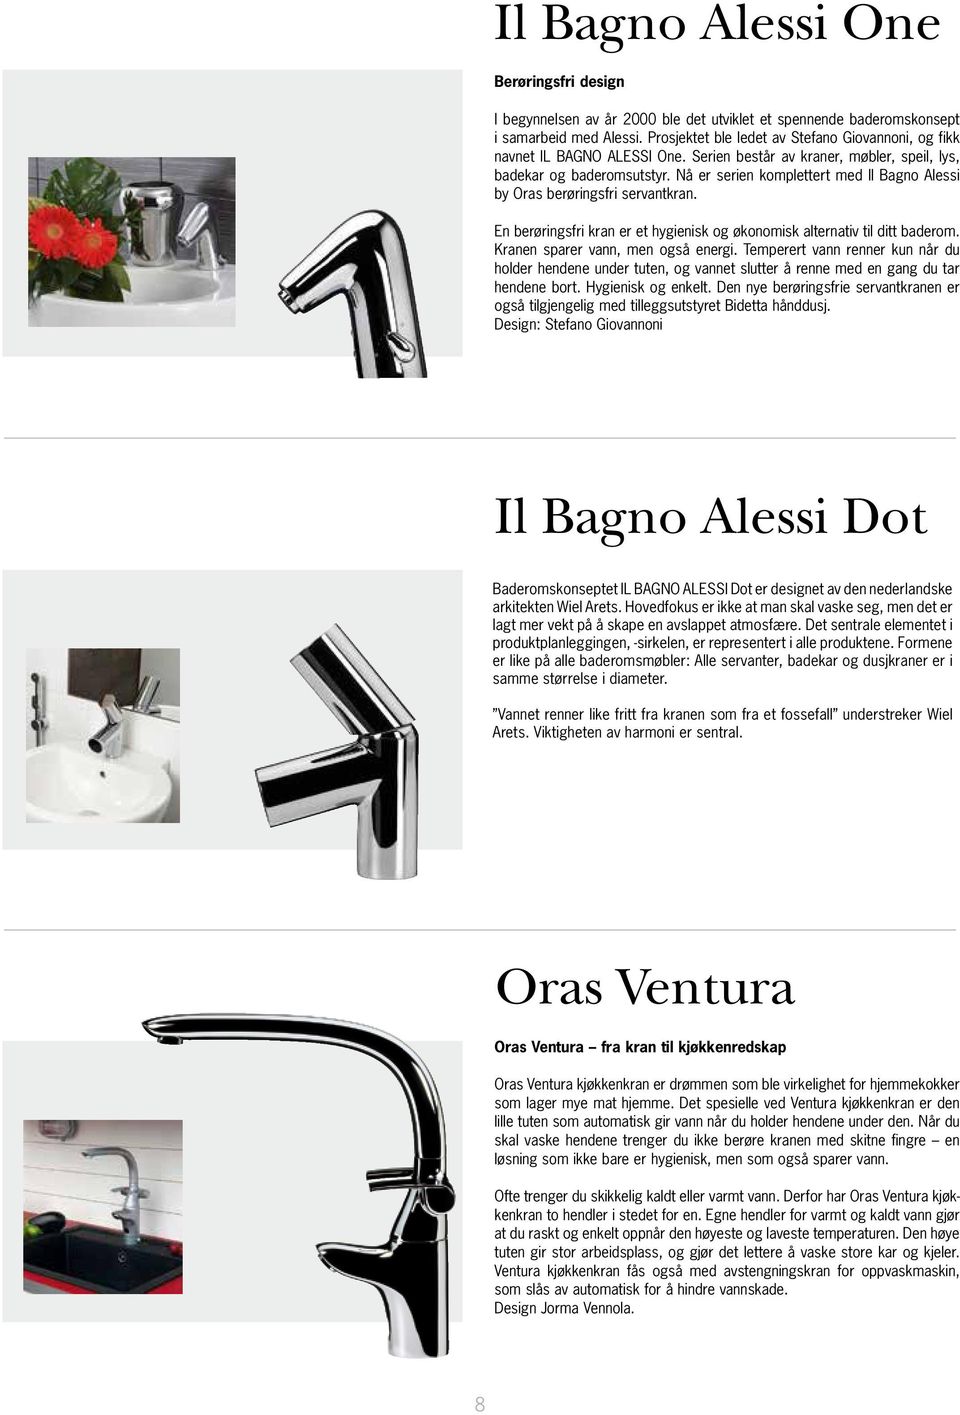 Prosjektet ble ledet av Stefano Giovannoni, og fikk navnet IL BAGNO ALESSI One. Serien består av kraner, møbler, speil, lys, navnet IL BAGNO ALESSI One.